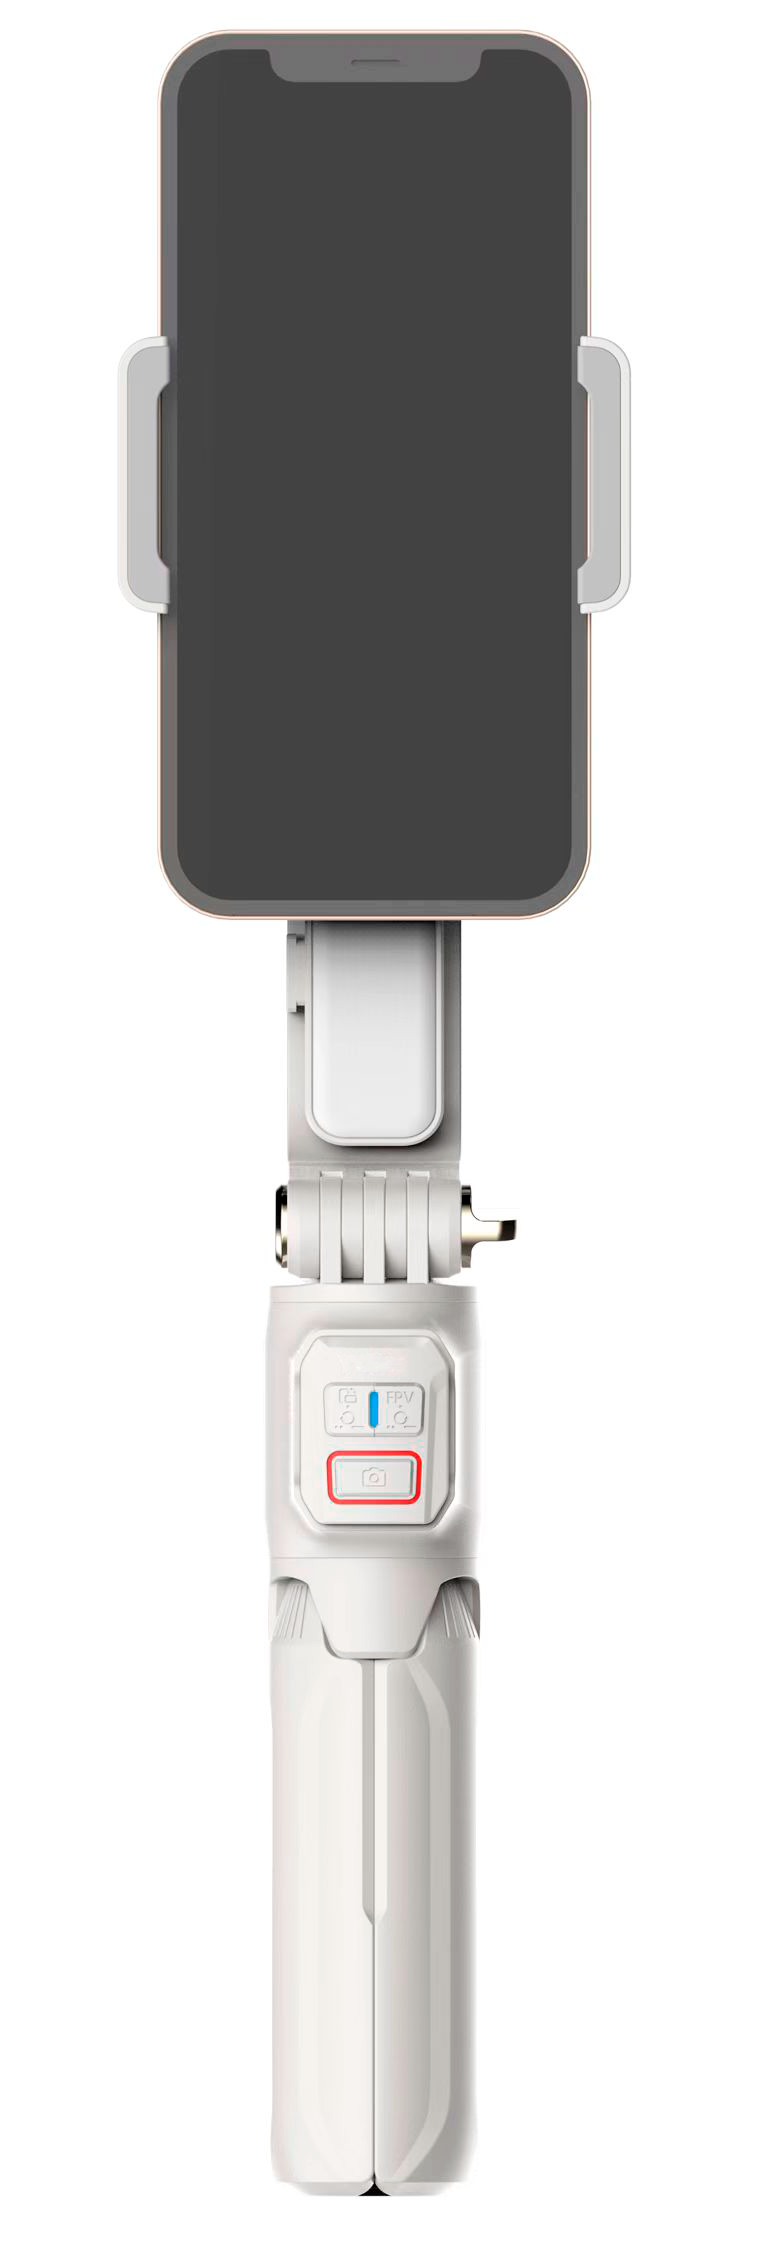 Стабилизатор для смартфона GimbalPro A10 White стабилизатор стедикам nobrand gimbalpro l7bpro голубой